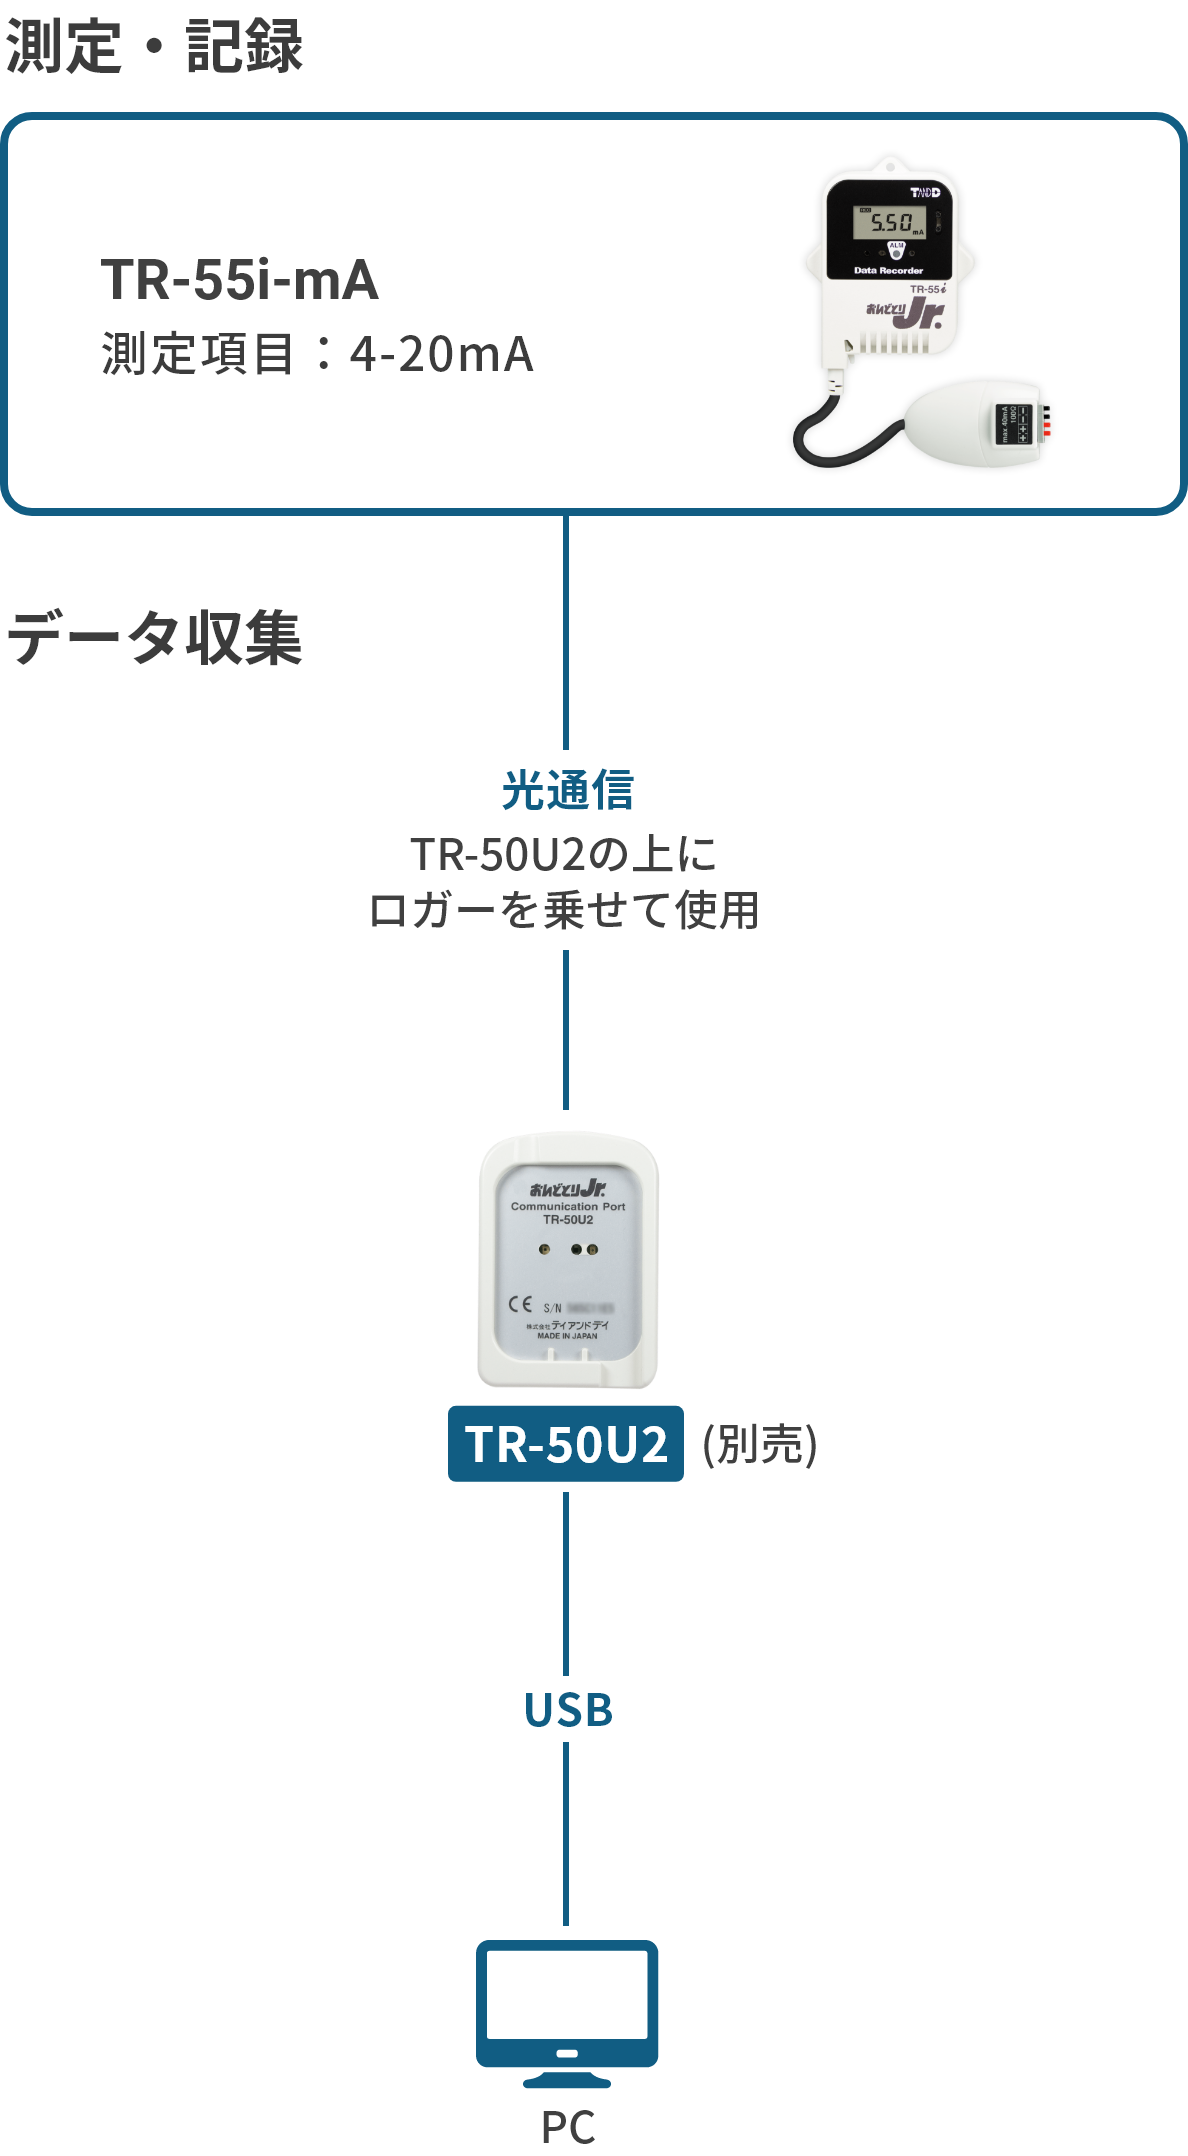 TR-55i-mAの構成図